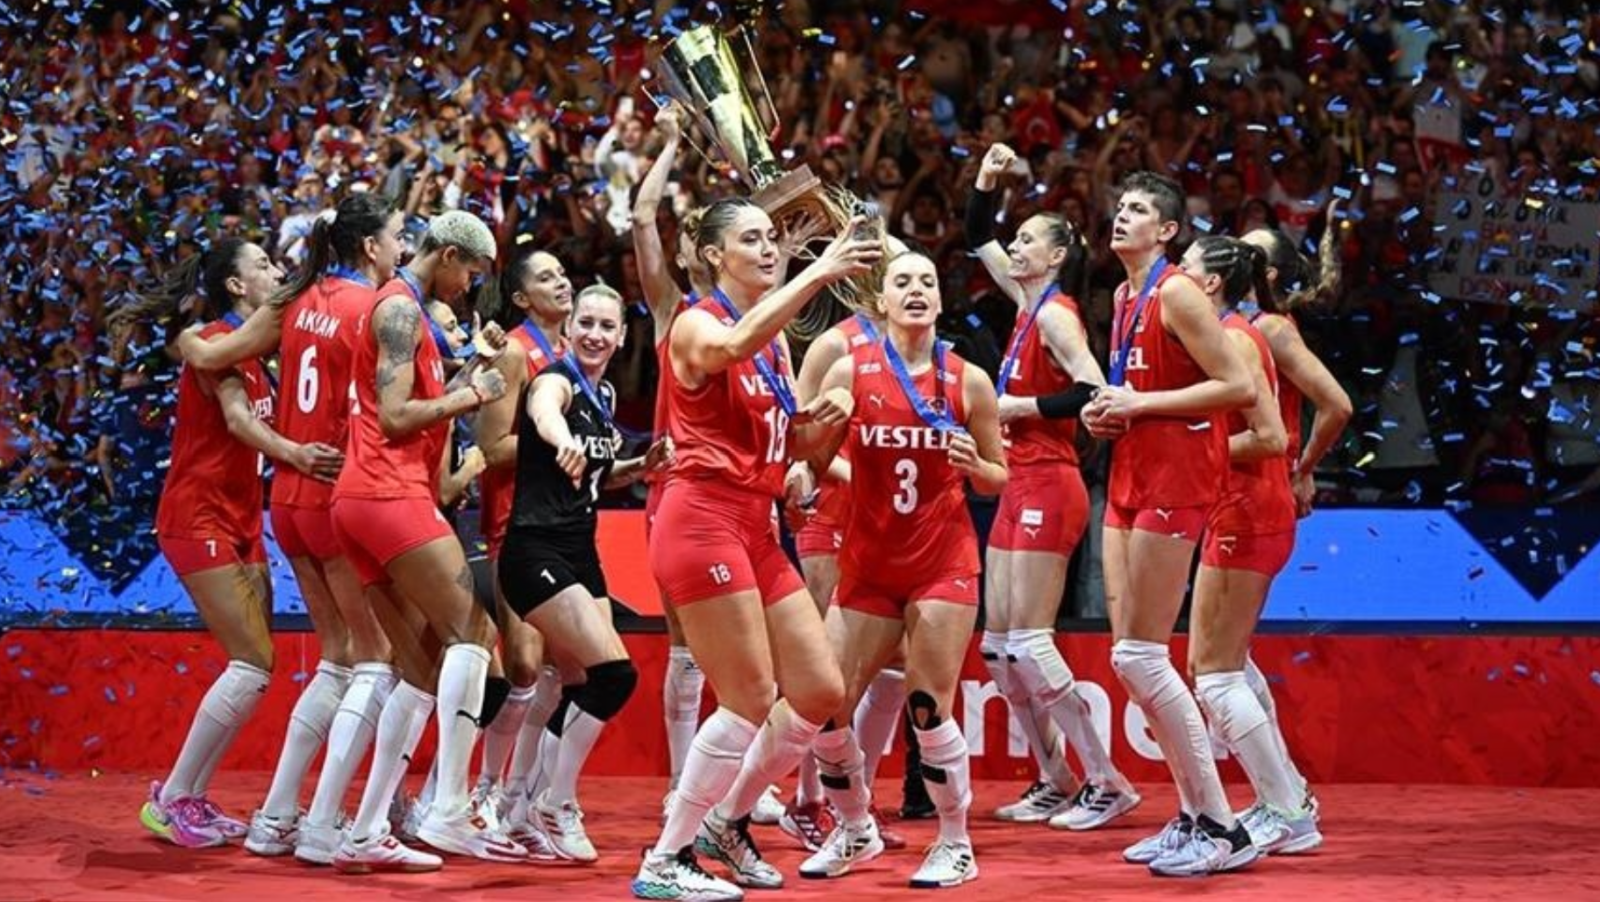 Türkiyə tarixində ilk dəfə: Qadınlardan ibarət komanda Avropa çempionu oldu - FOTO